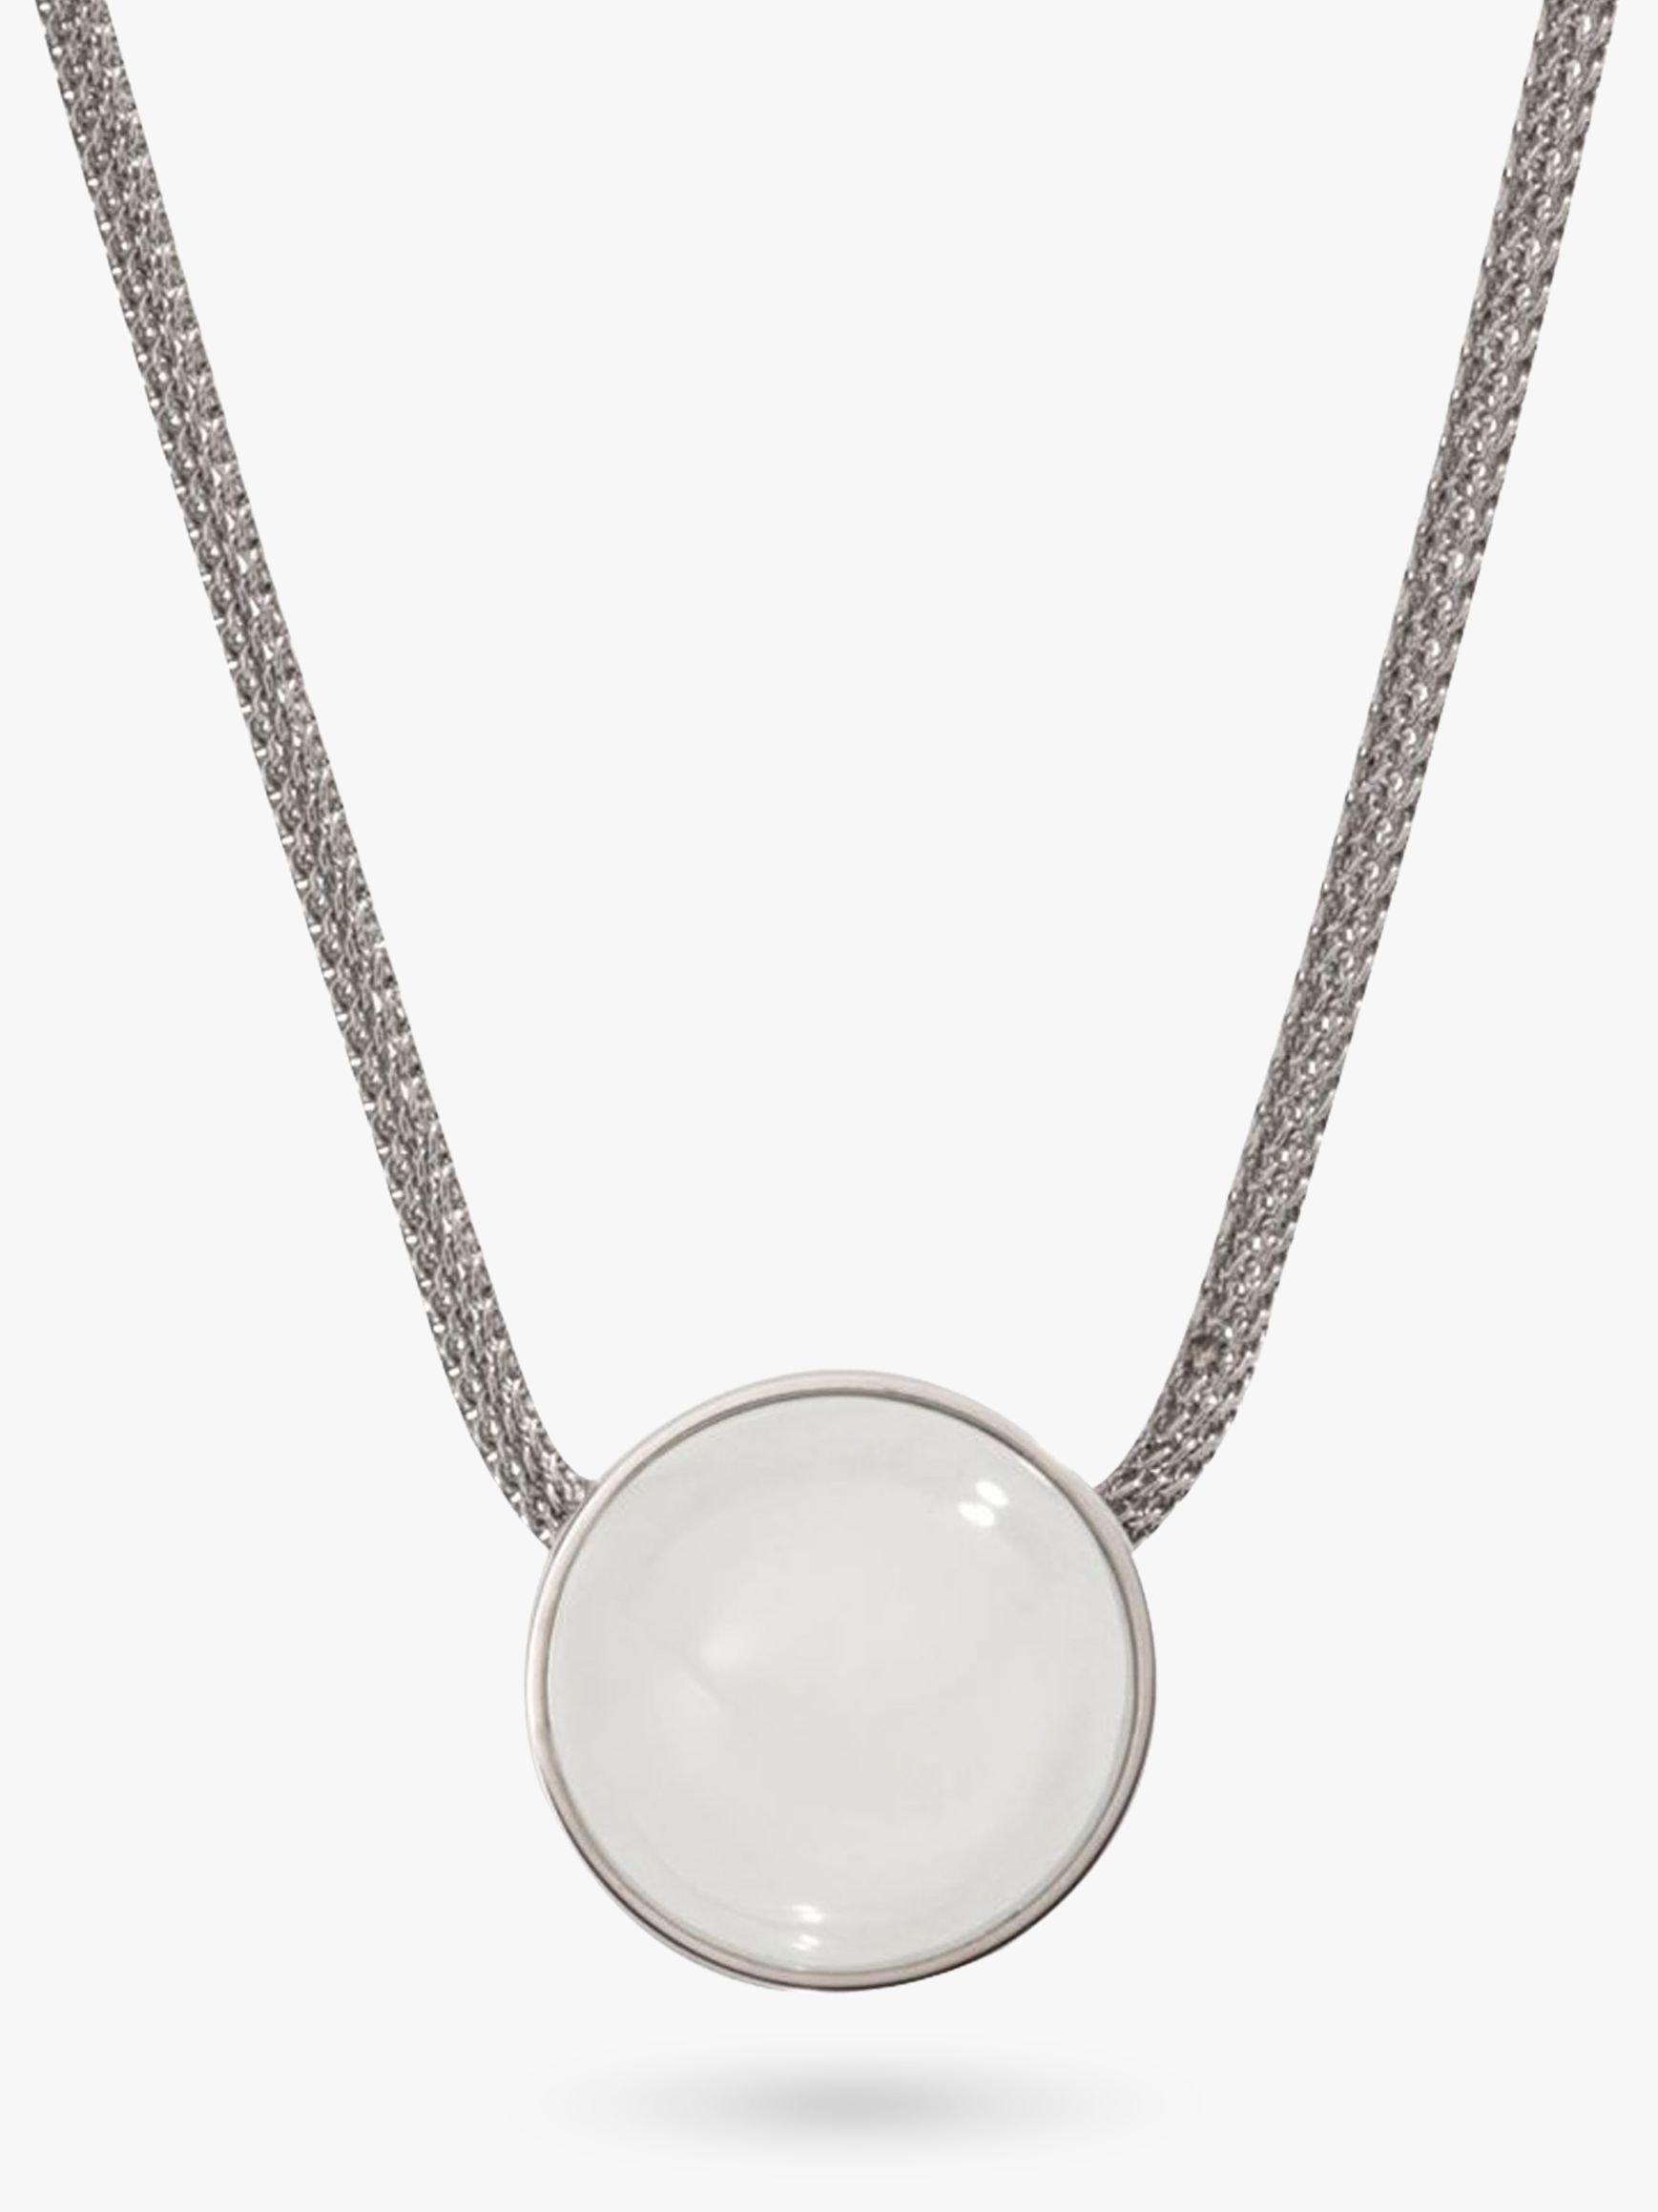 Skagen Sea Glass Round Pendant Necklace, Silver/White SKJ0080040